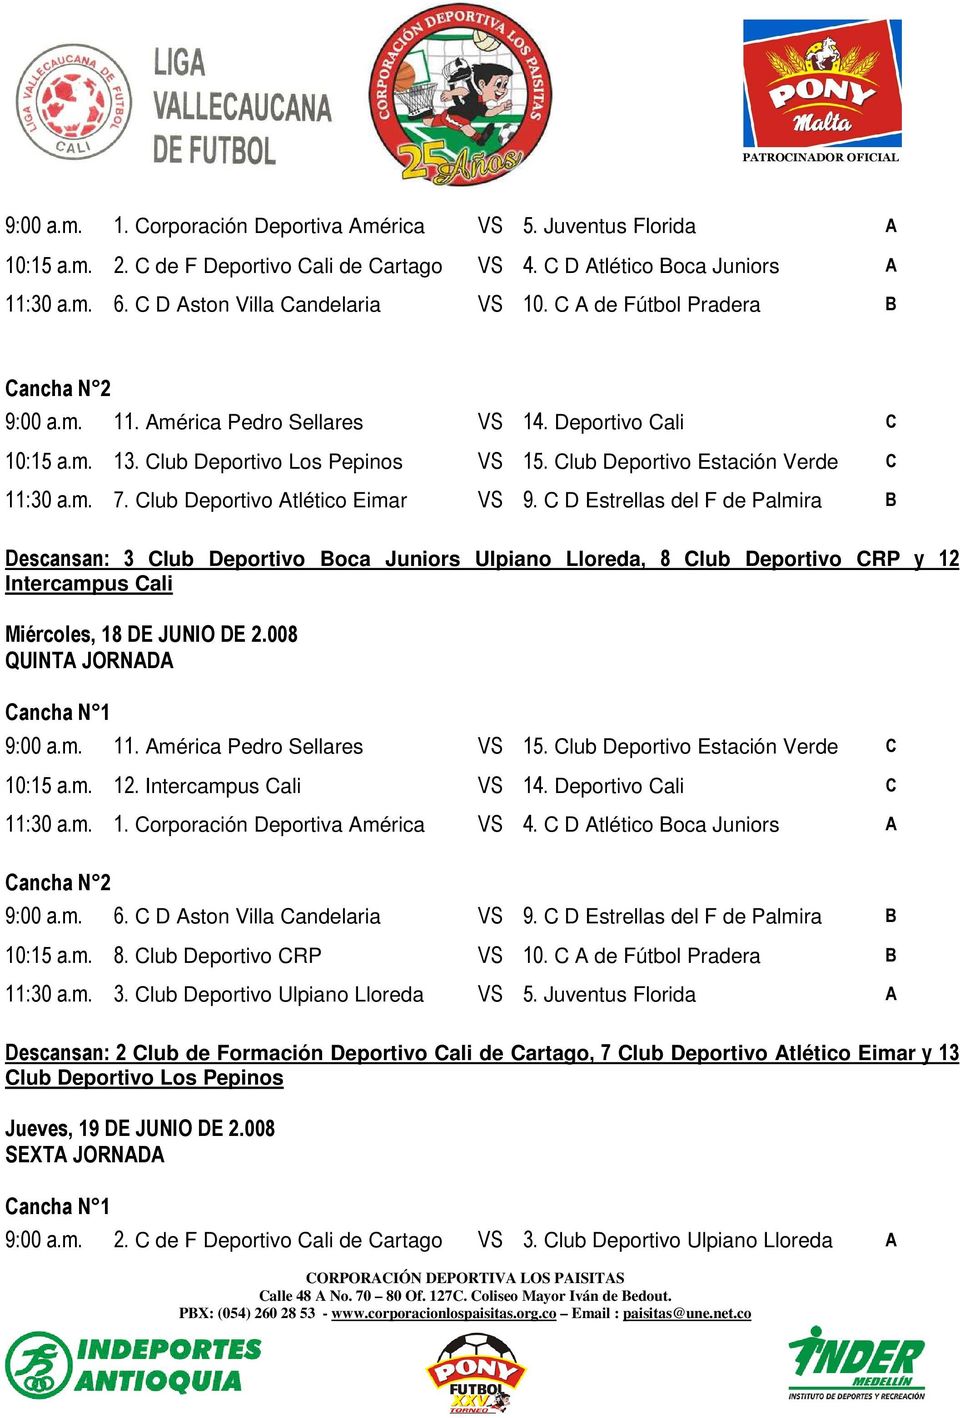 Club Deportivo Atlético Eimar VS 9. C D Estrellas del F de Palmira B Descansan: 3 Club Deportivo Boca Juniors Ulpiano Lloreda, 8 Club Deportivo CRP y 12 Intercampus Cali Miércoles, 18 DE JUNIO DE 2.